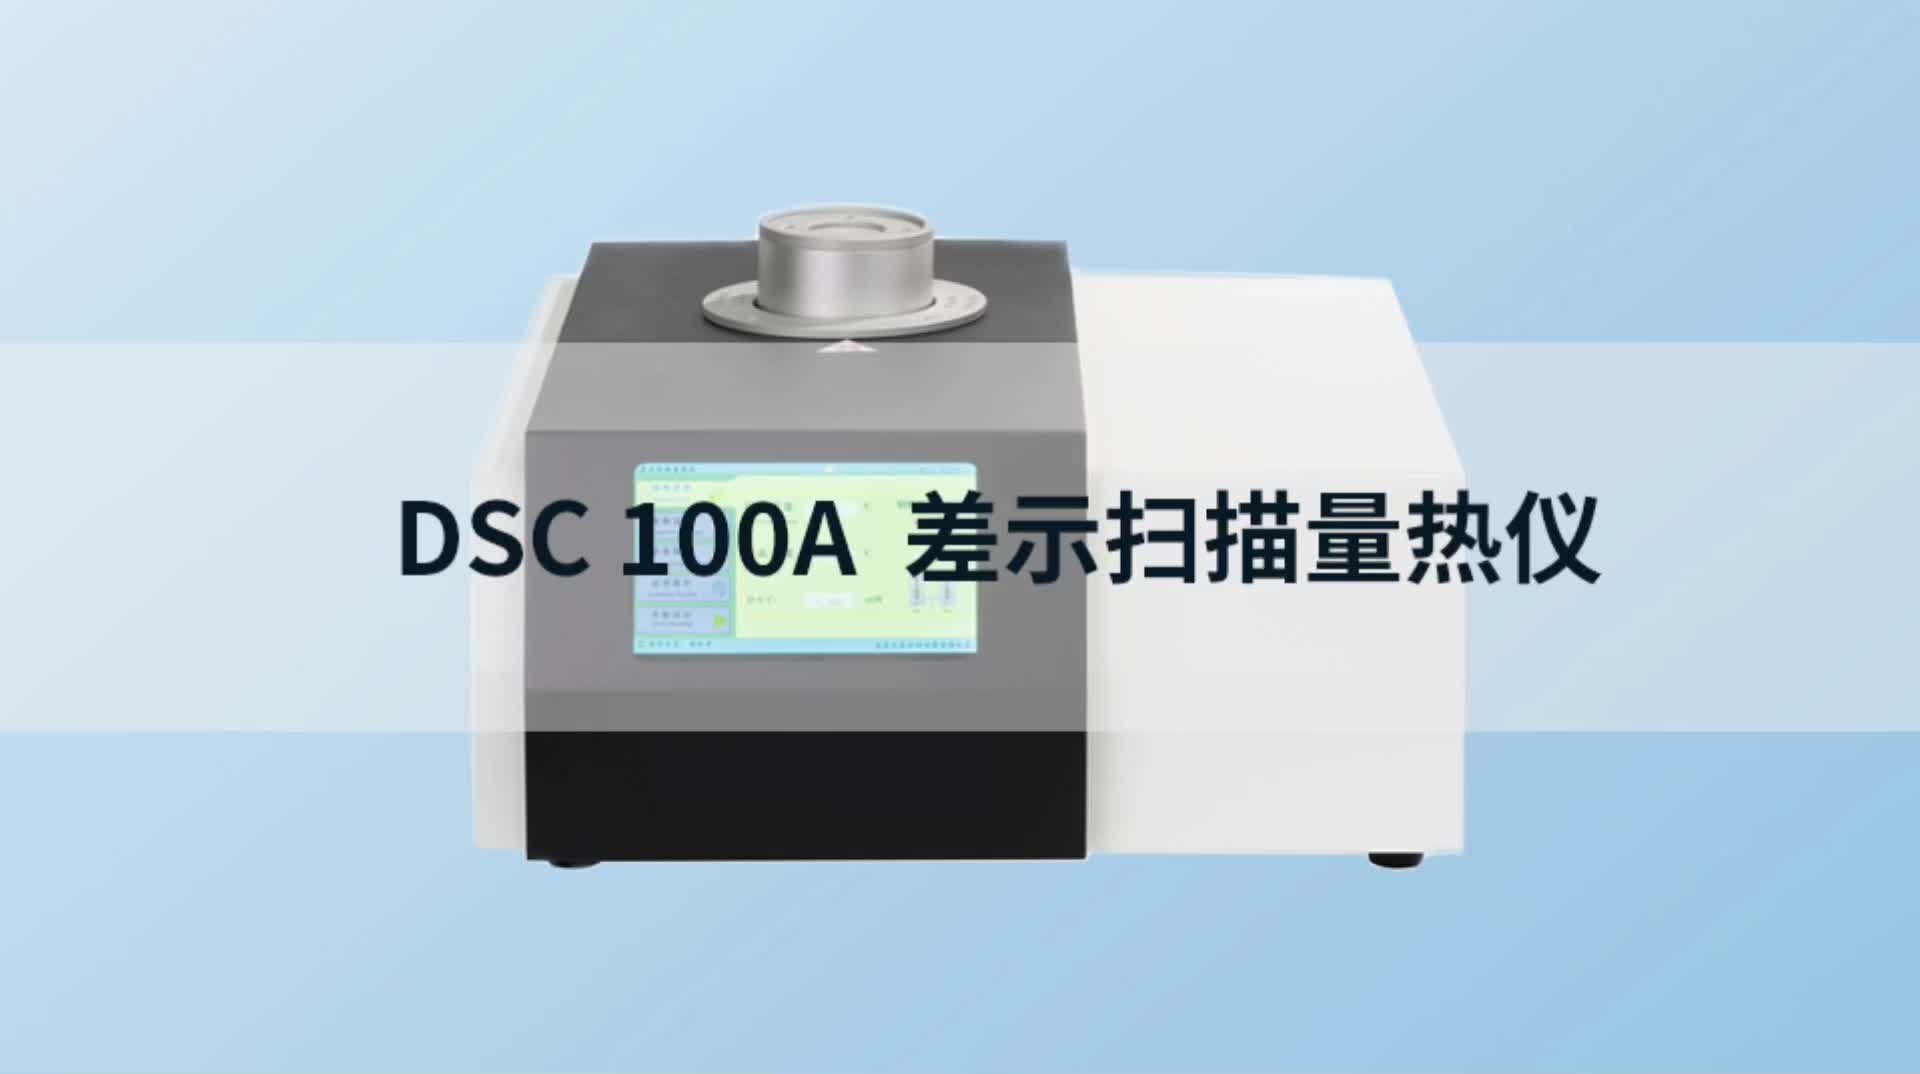 DSC100A 差示扫描量热仪 #dsc差示扫描量热仪 #生产厂家 